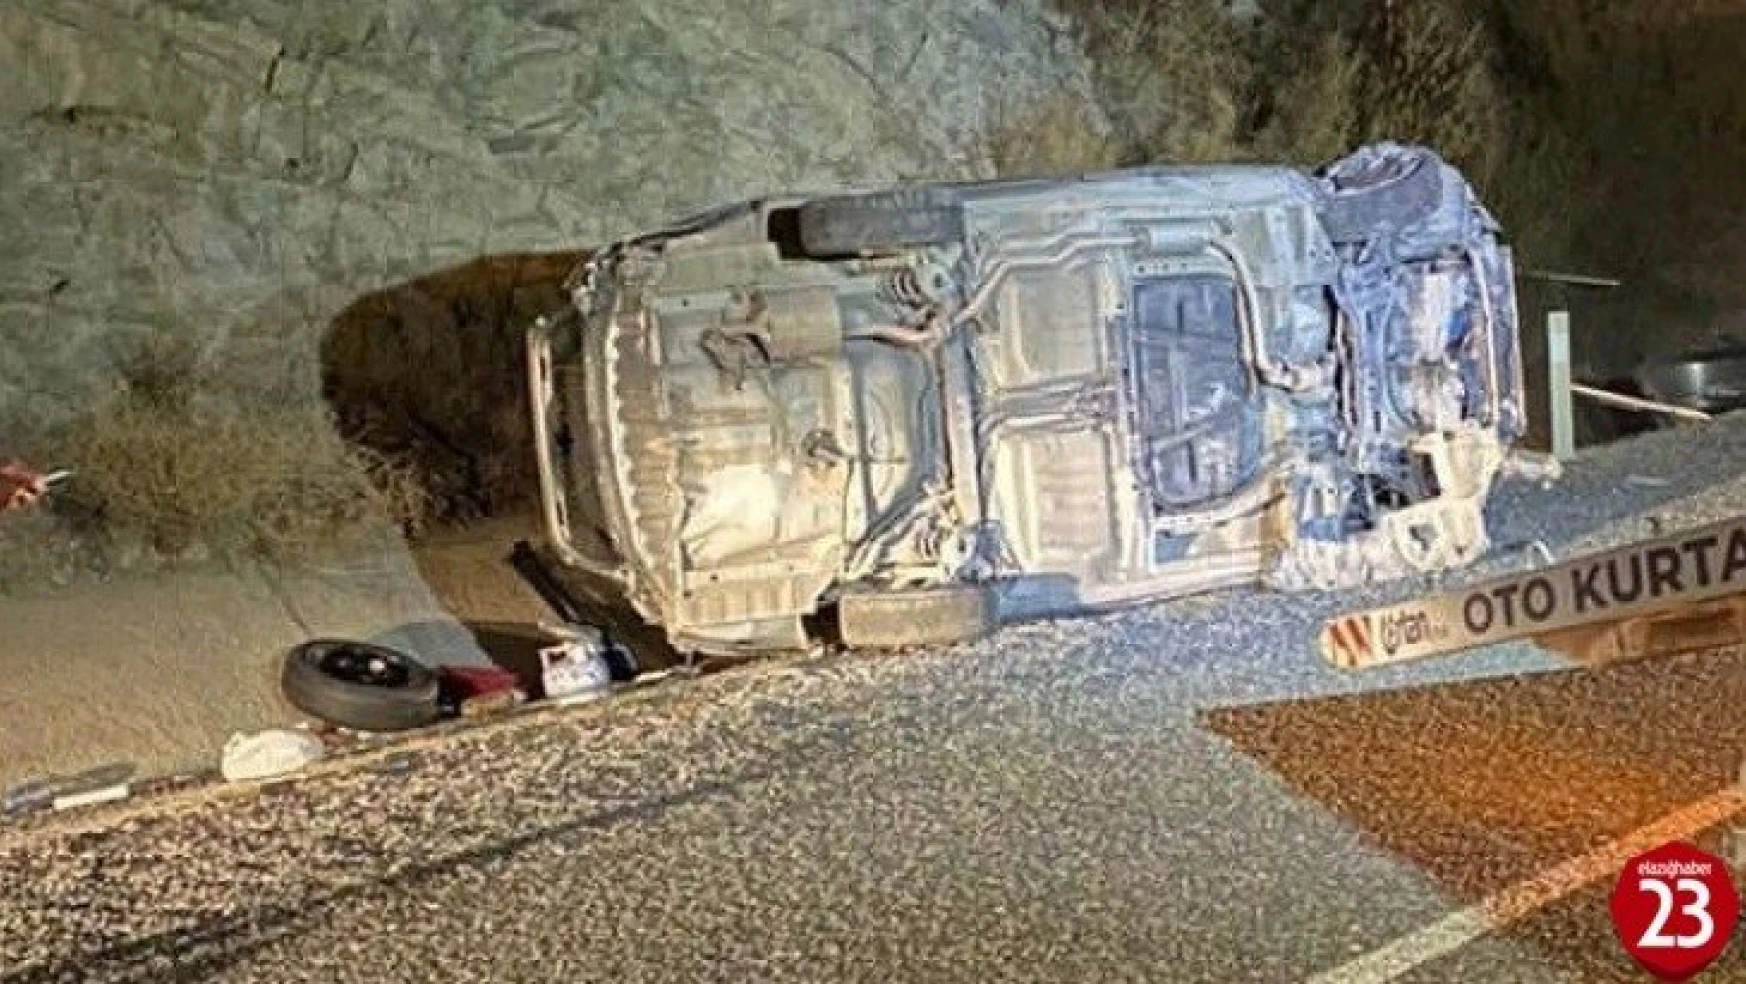 Elazığ'da otomobil  takla attı, sürücü yaralı kurtuldu